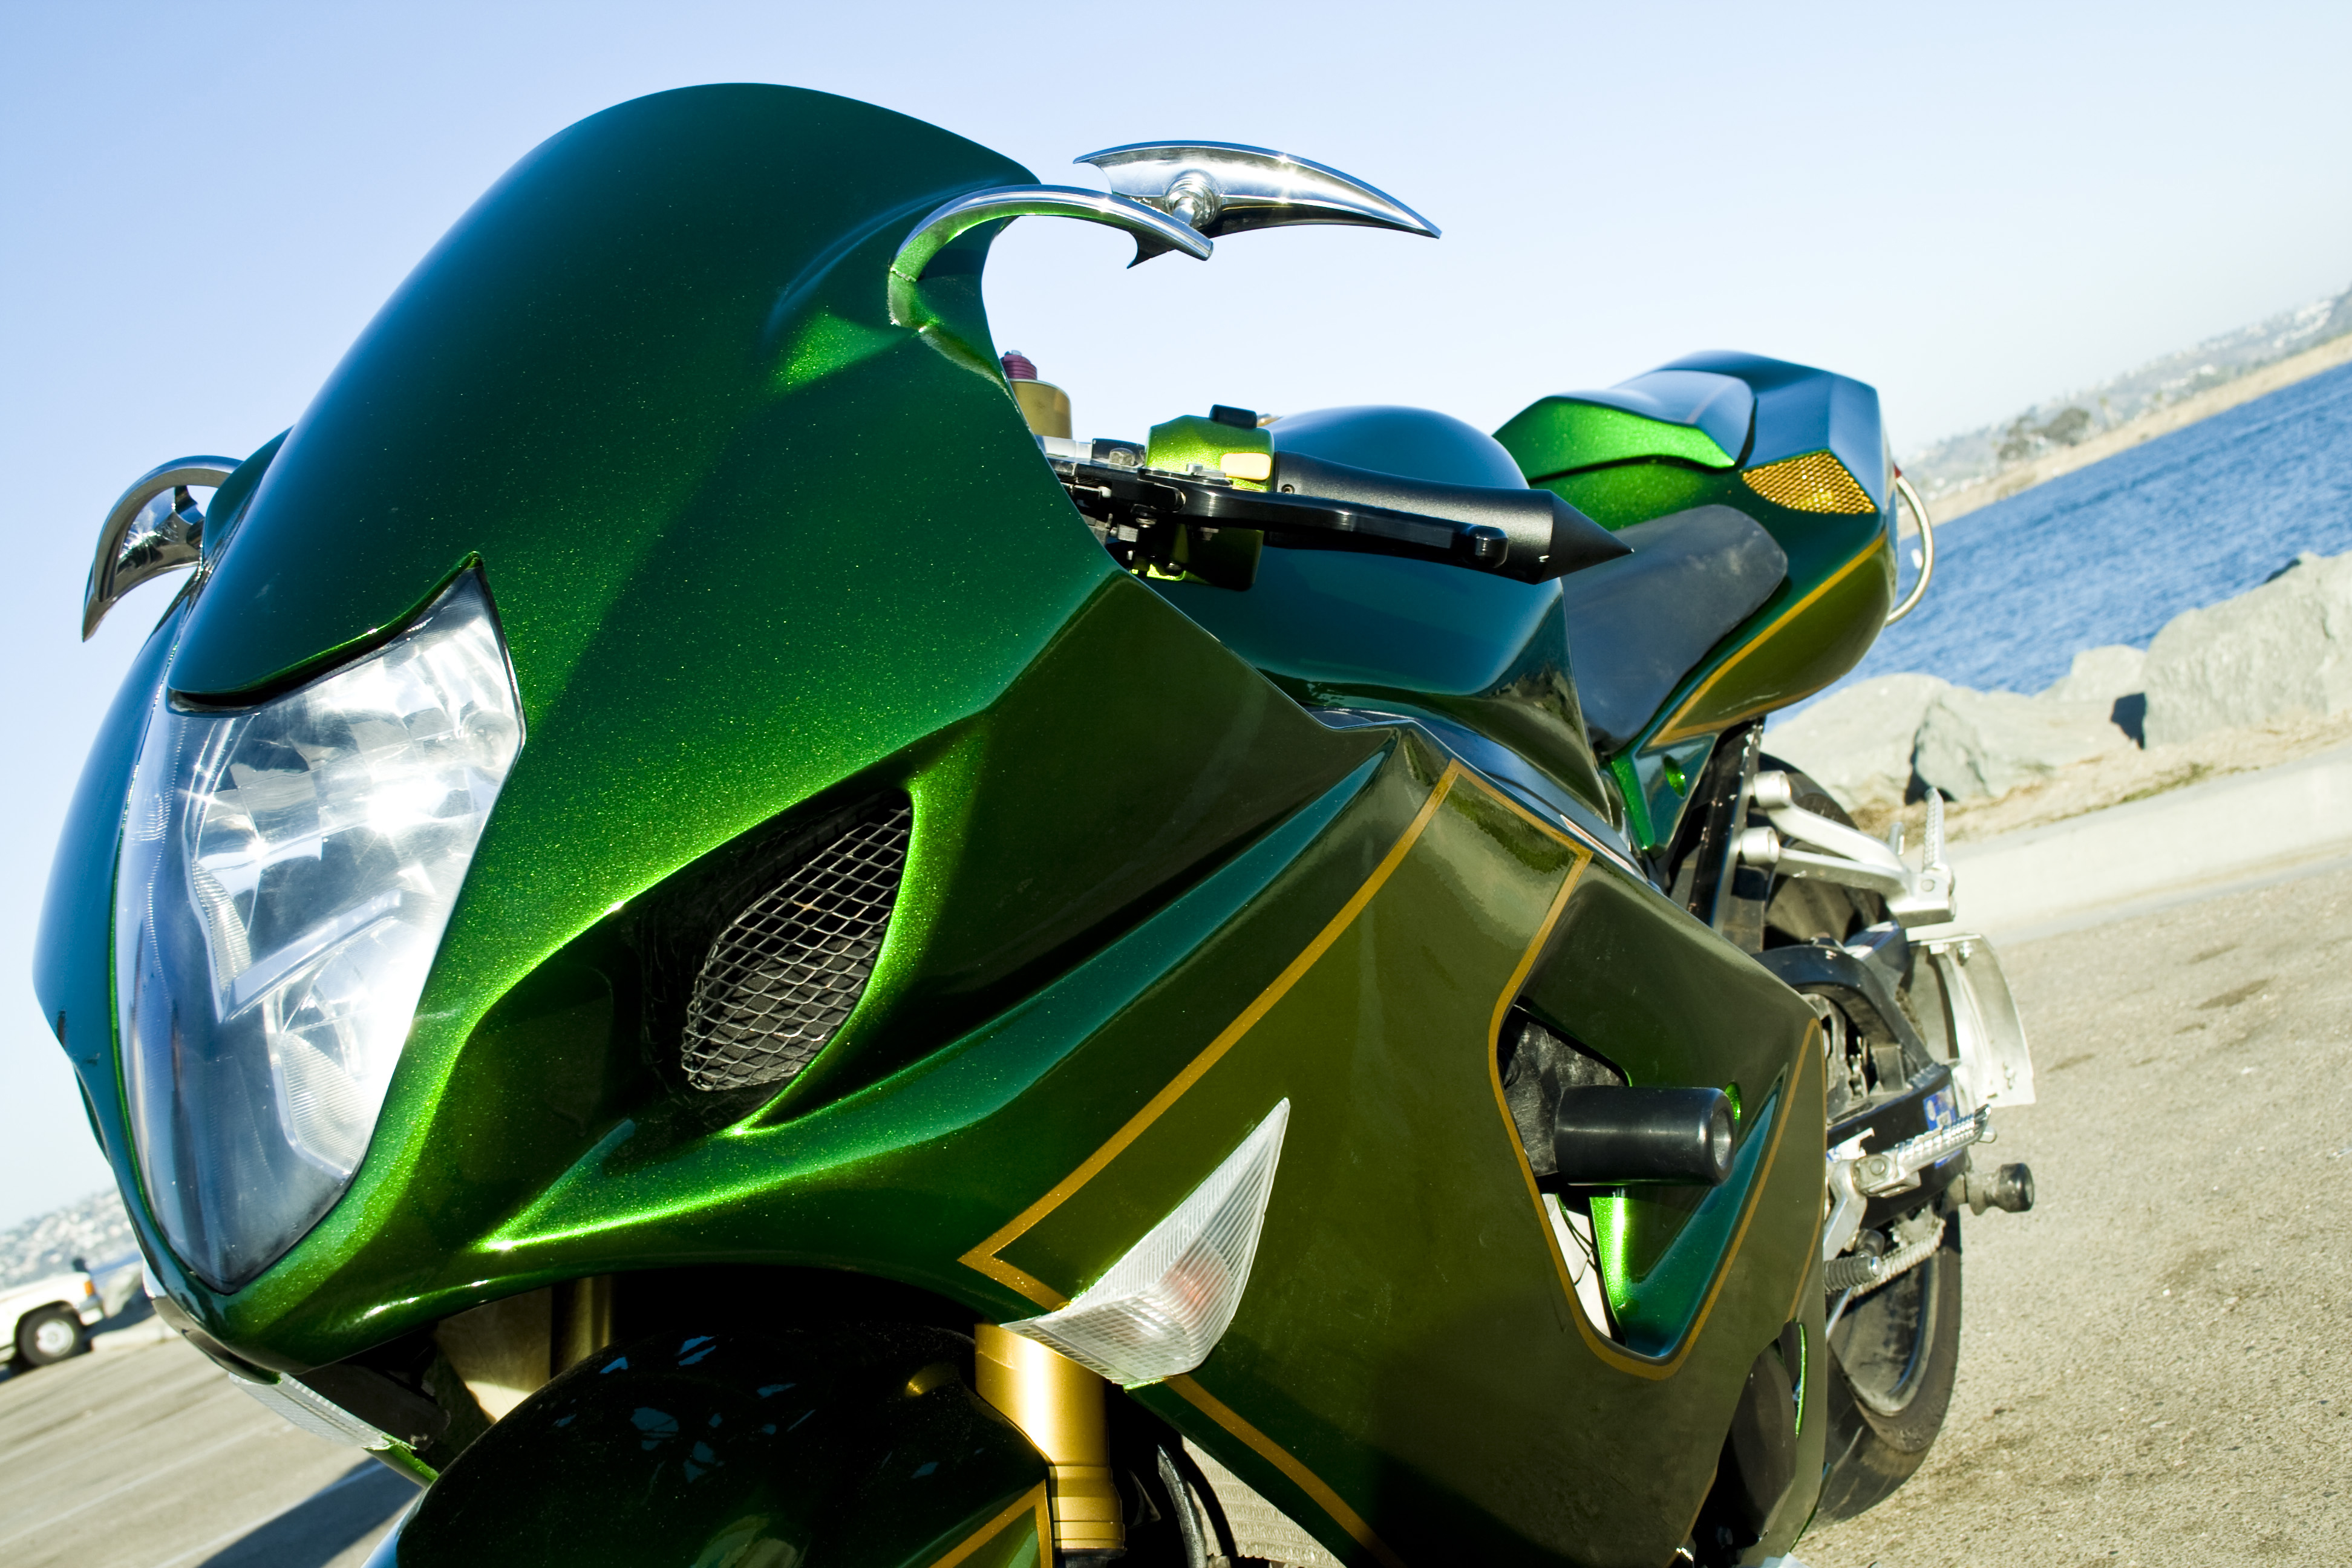 Shiny green motorcycle photo